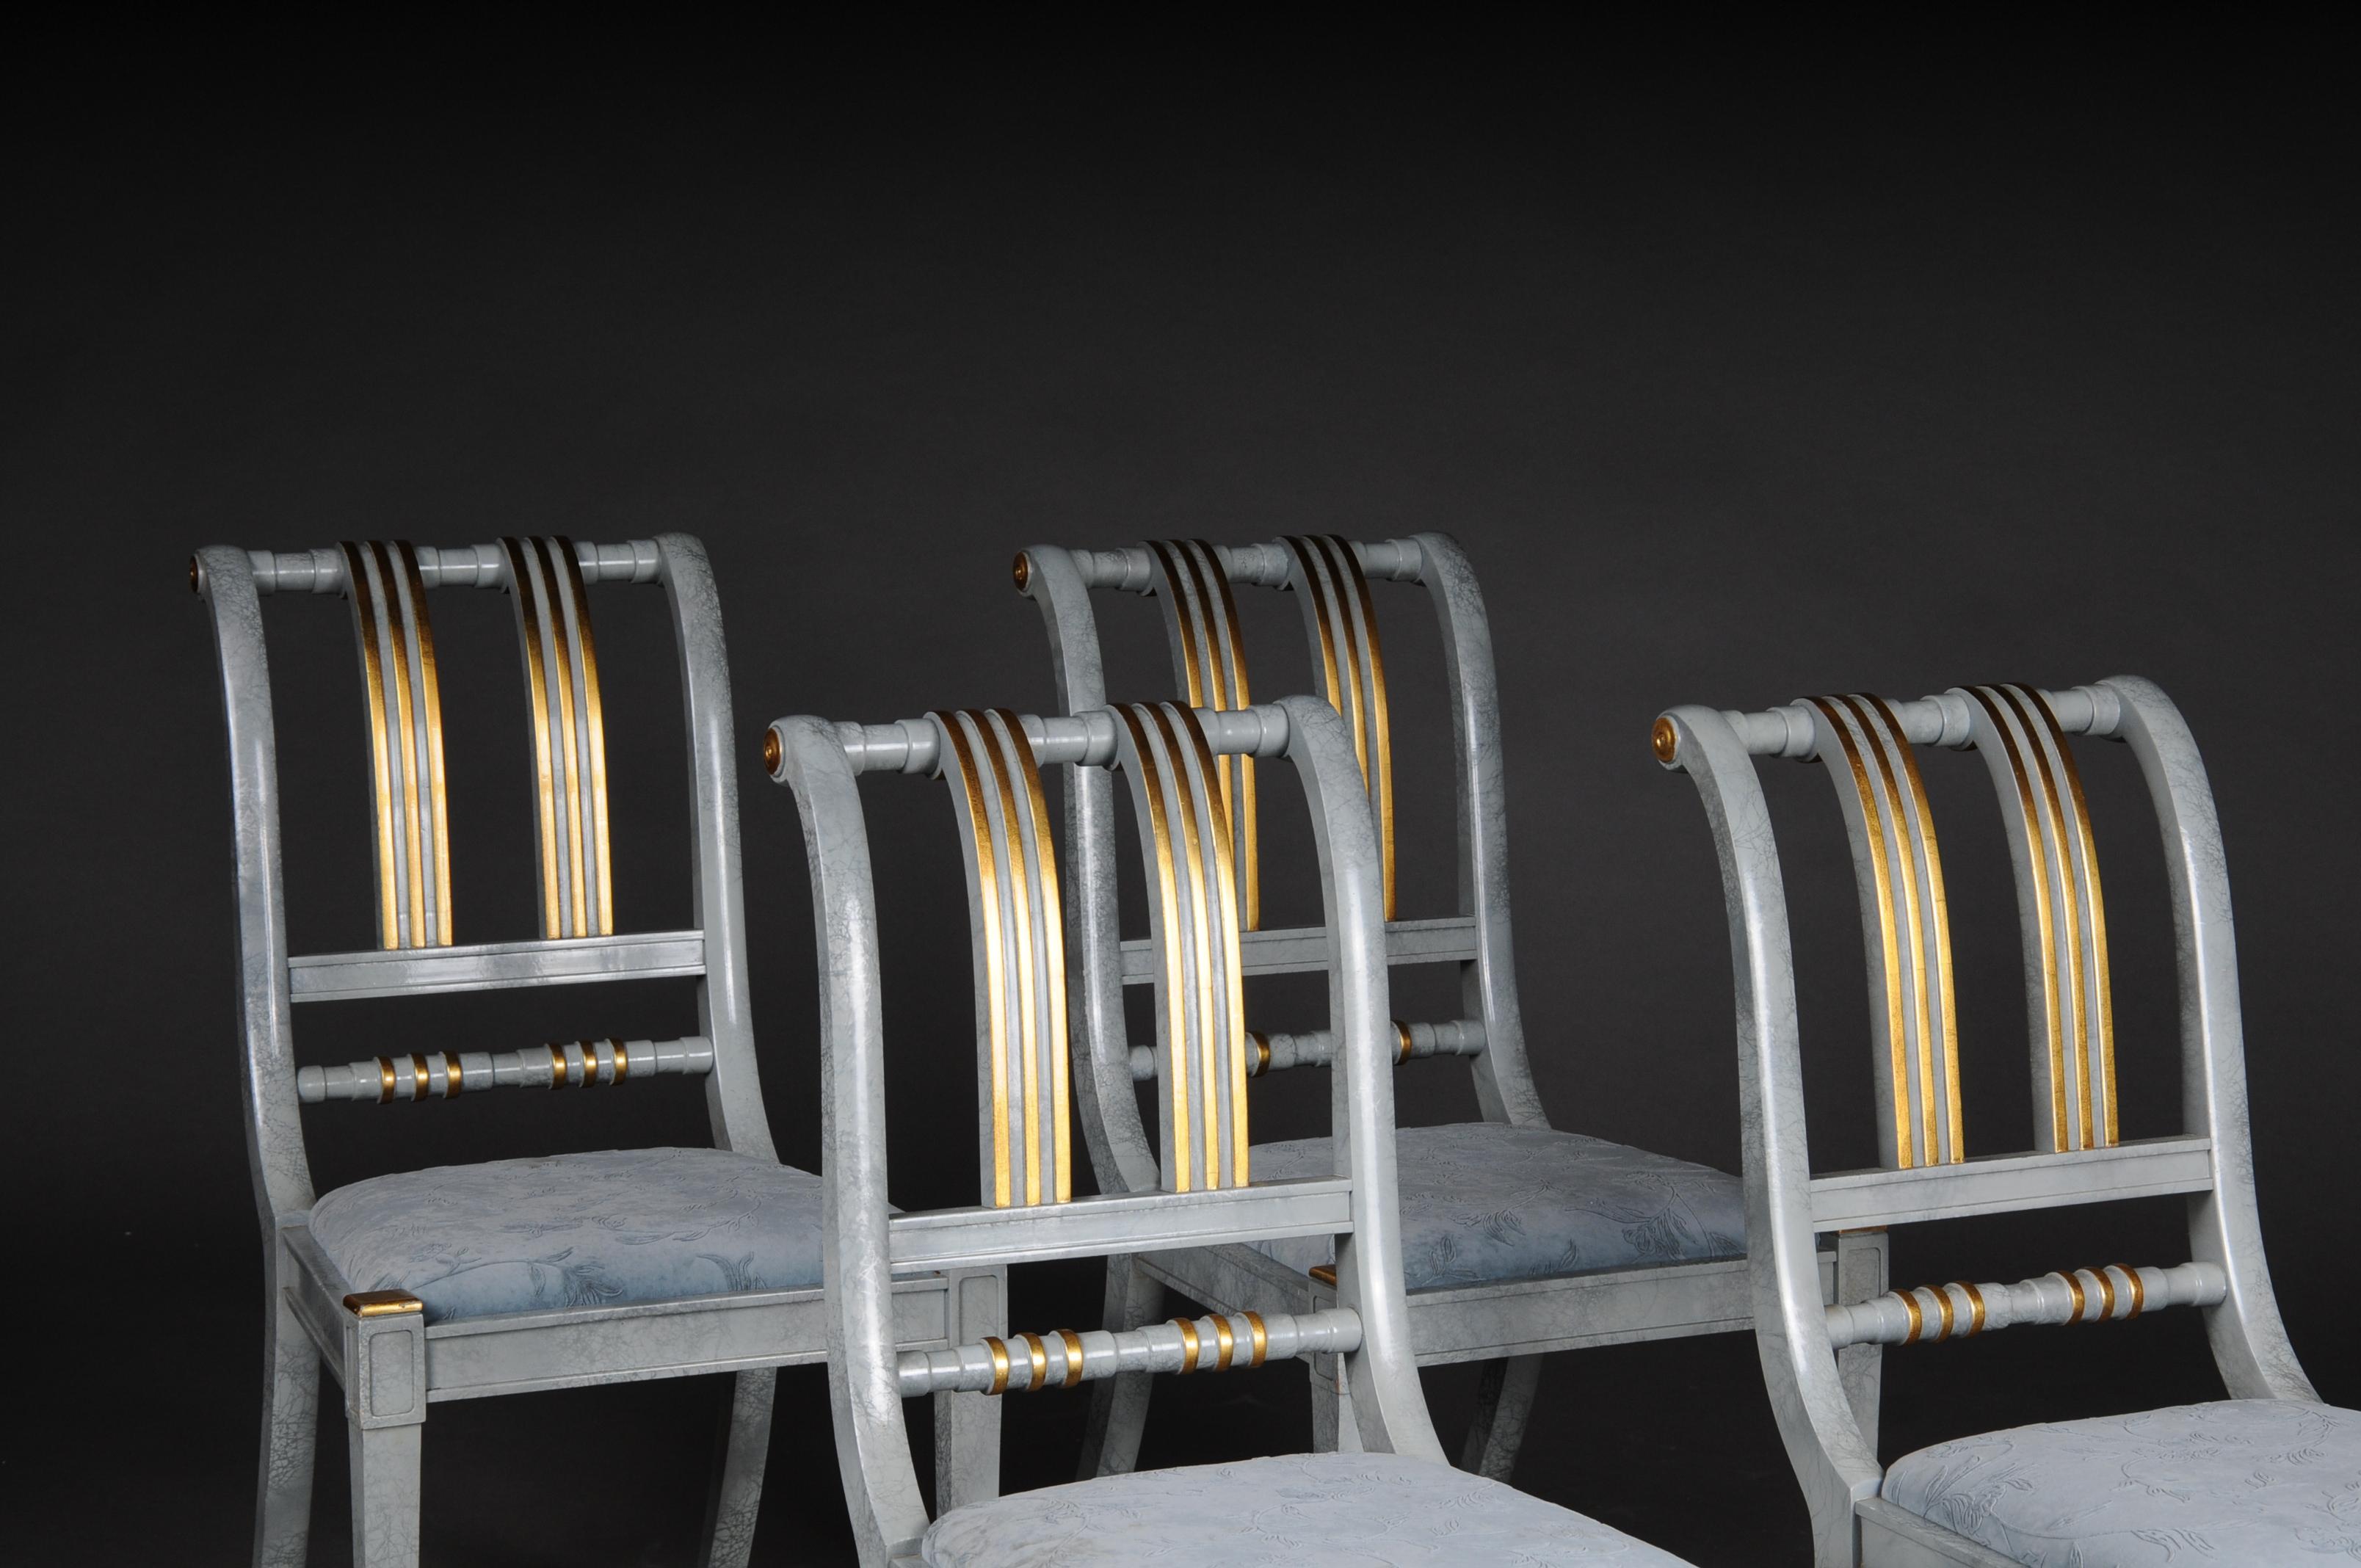 20ème siècle : détachement de 4 chaises de designer italien, en bois.

Cadre en bois massif, marbré, partiellement décoré à l'or. Fabrication de très haute qualité. Dossier décoré d'entretoises dorées. Siège rembourré en tissu de haute